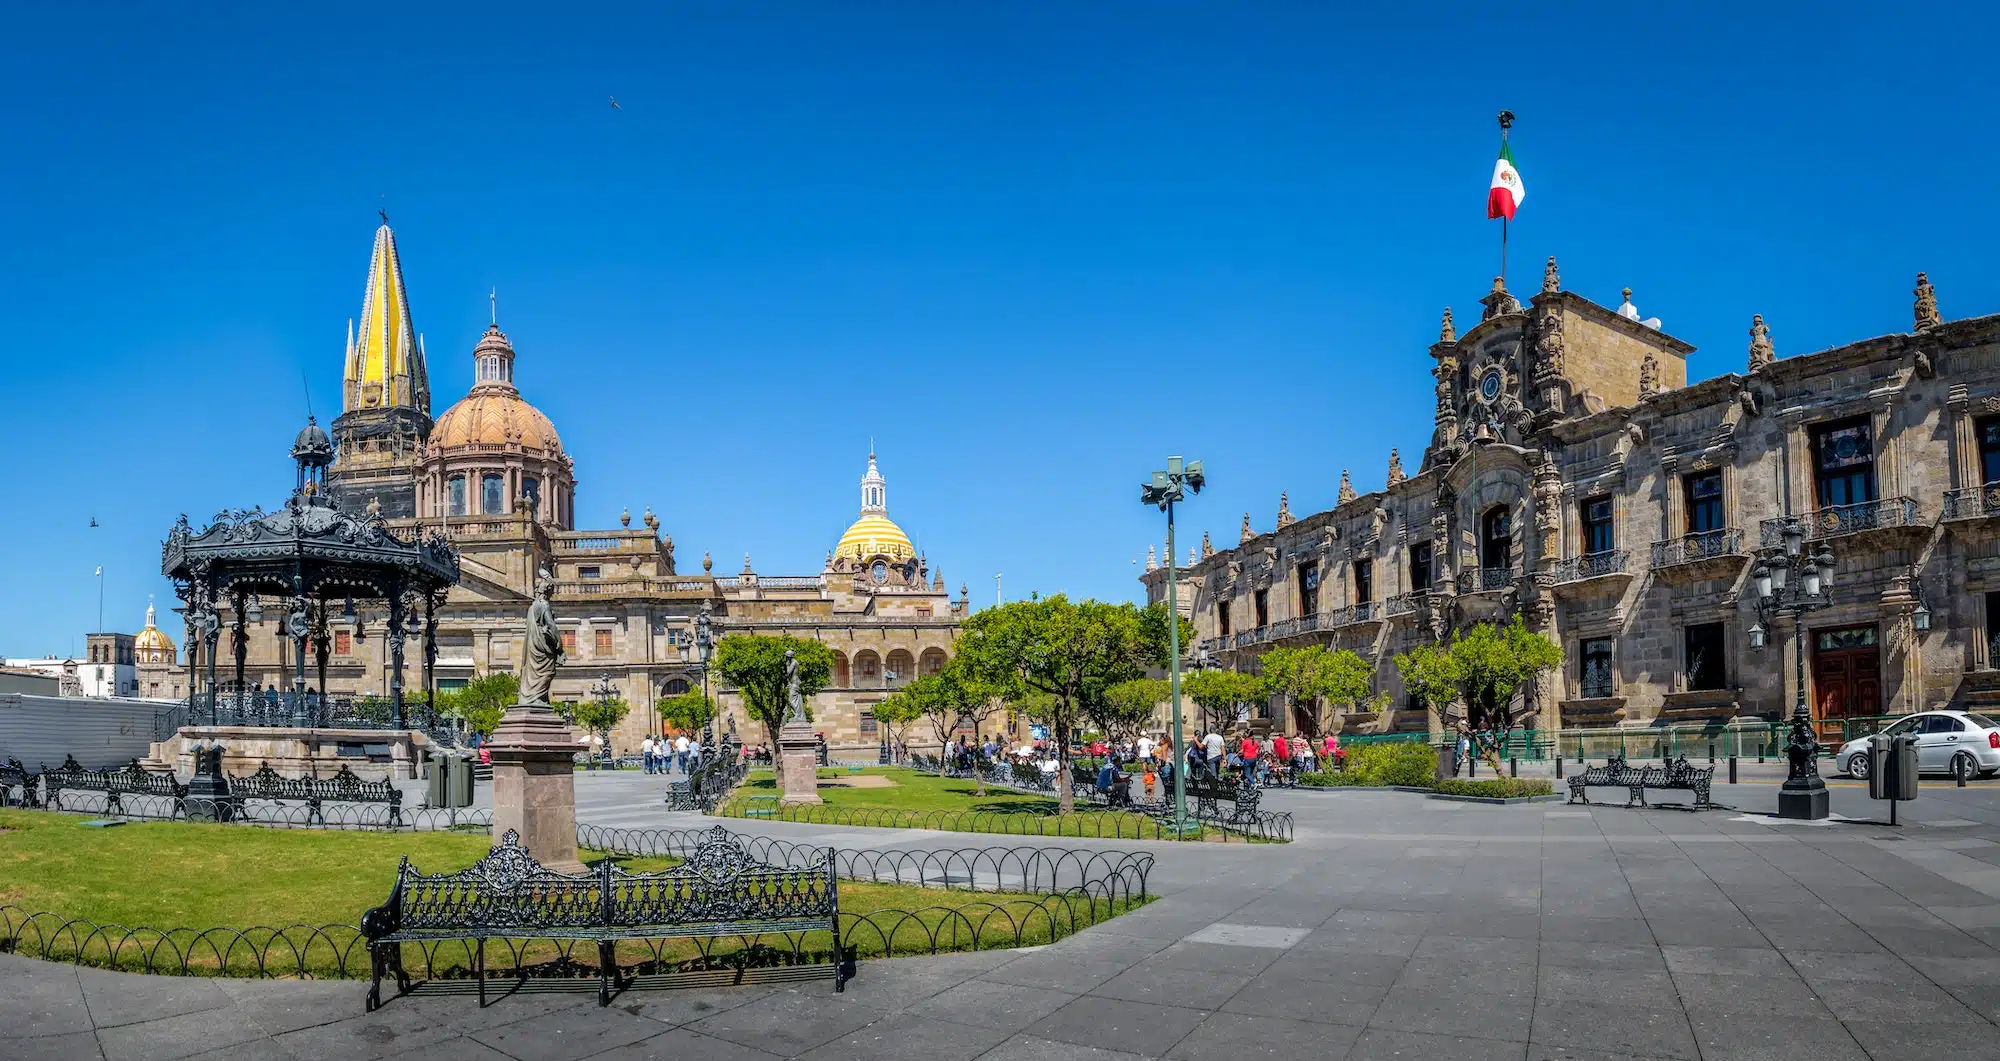 Guadalajara Cathedral and State Government Palace - Guadalajara, Jalisco, Mexico